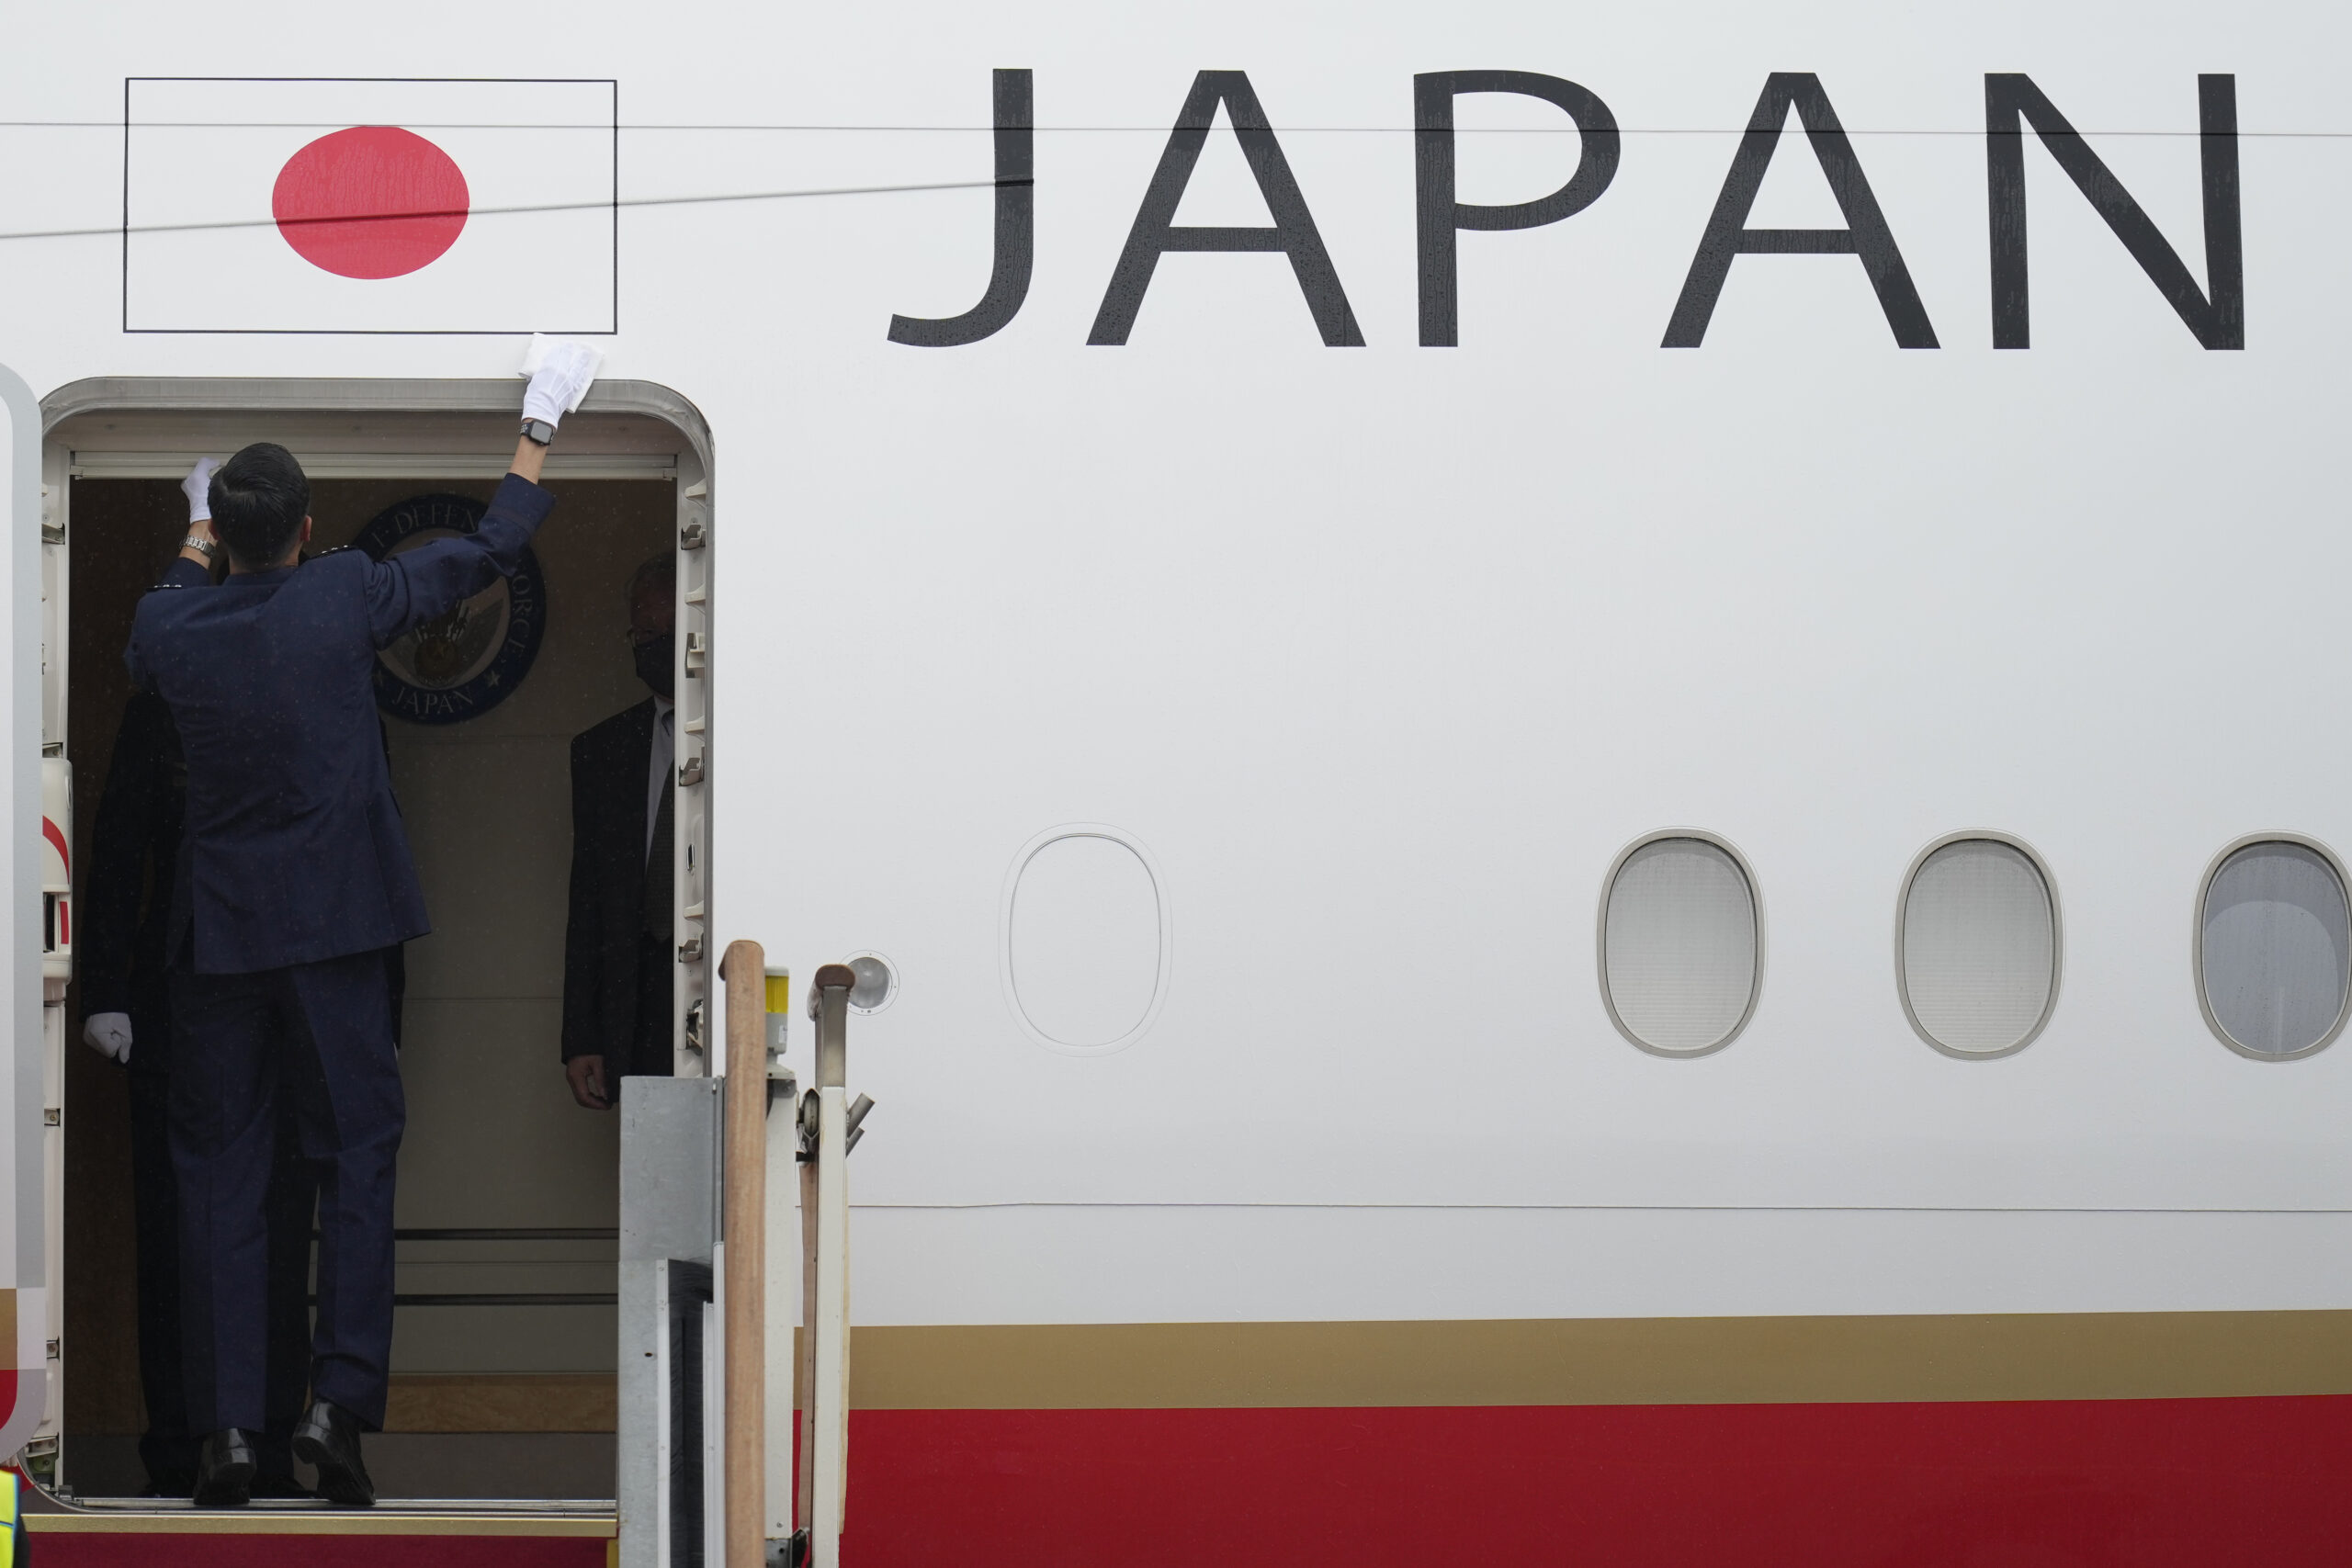 Η Κίνα και η Ιαπωνία συμφωνούν σε νέο γύρο οικονομικού διαλόγου υψηλού επιπέδου